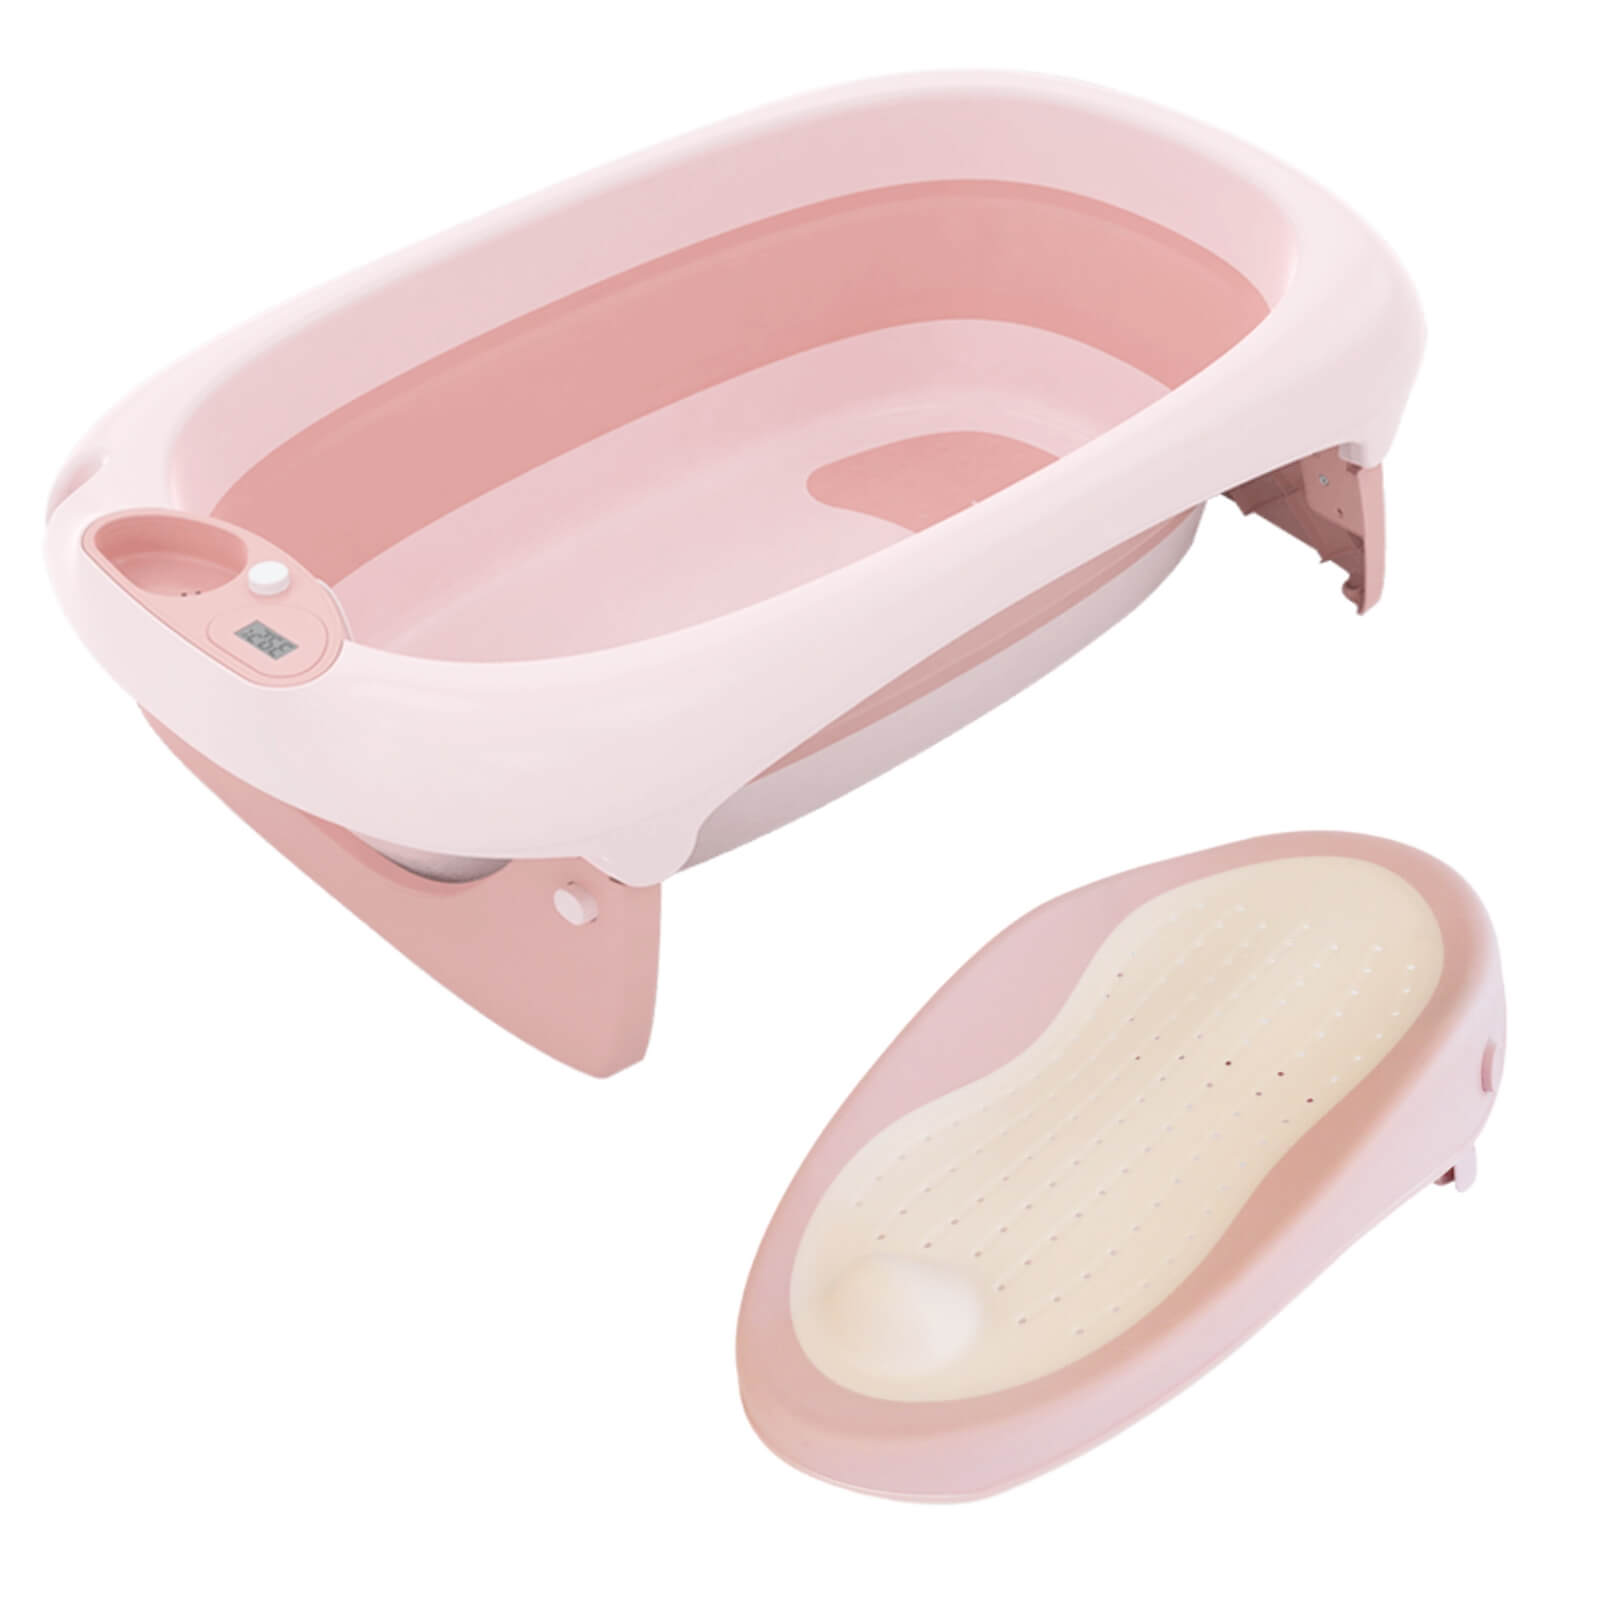 Foldable Baby Bath Tub & Bath Seat -Pink